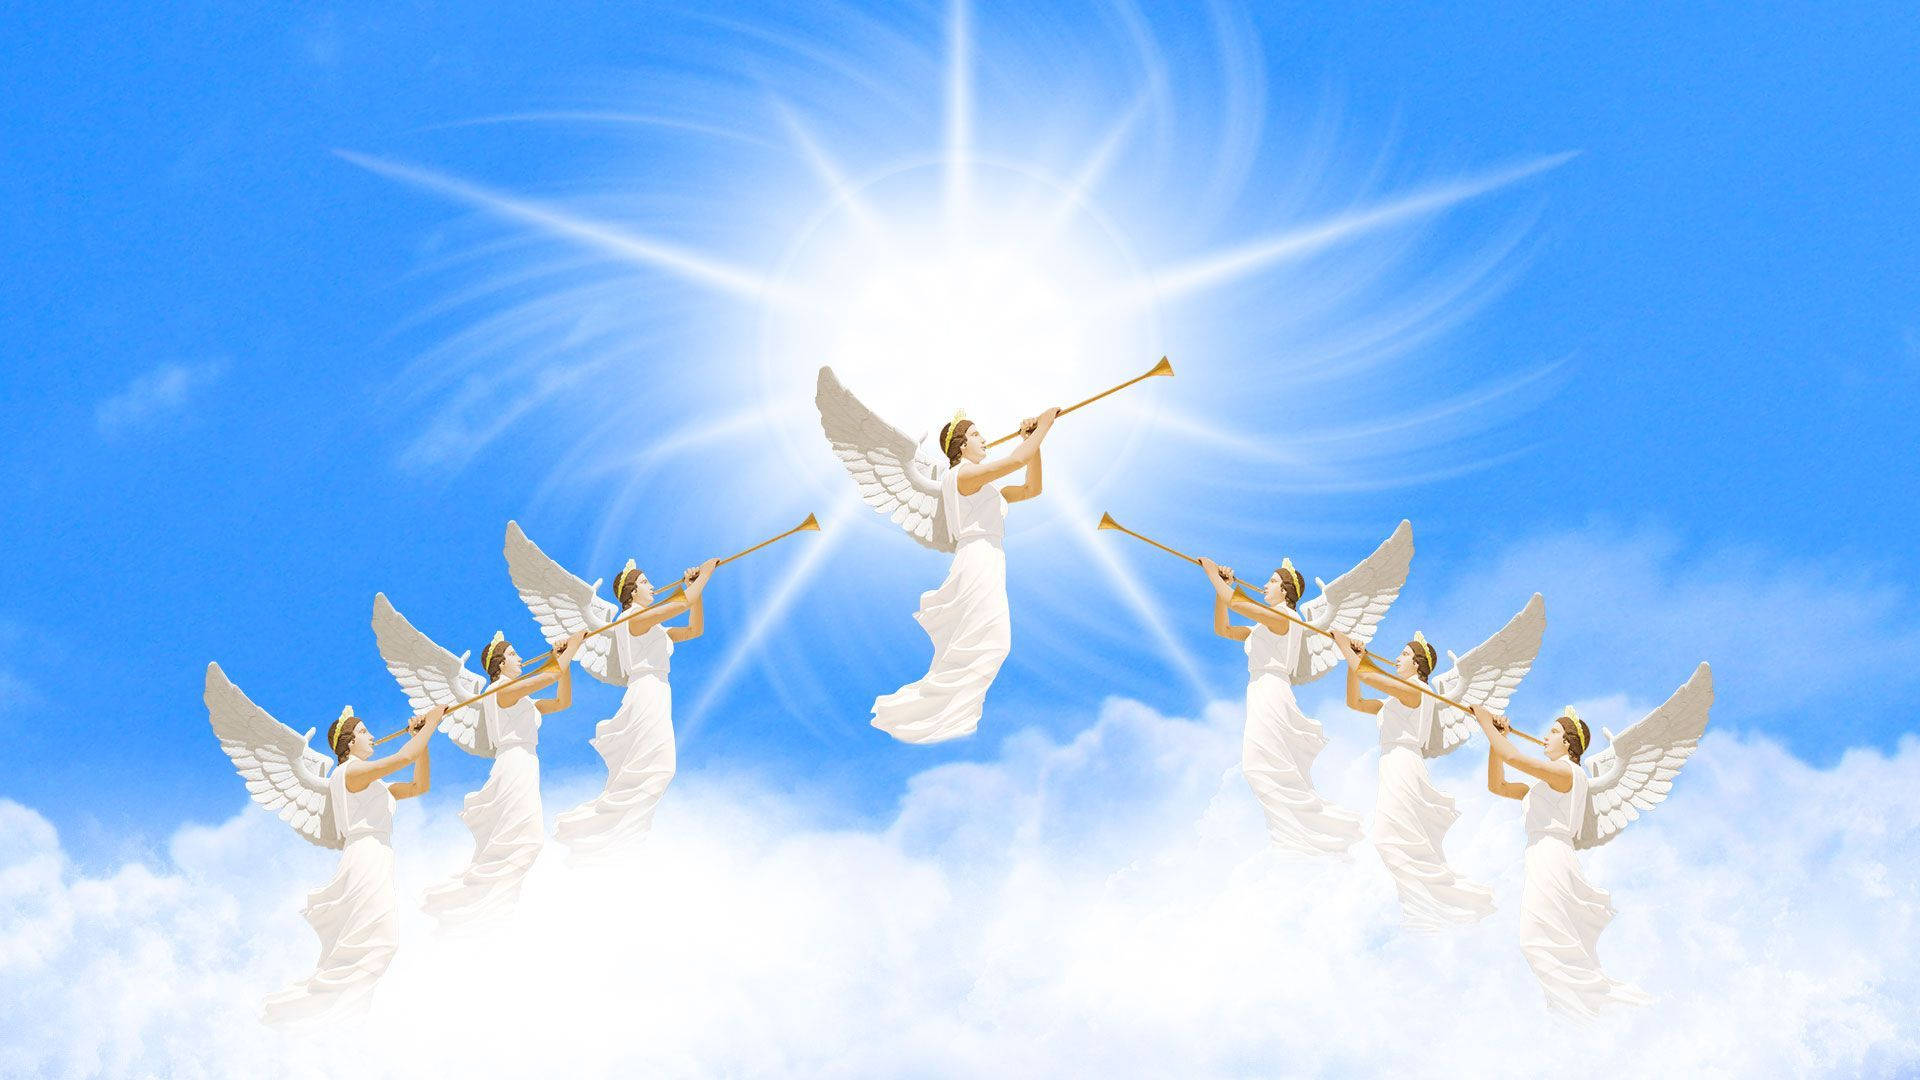 Biblical Angels Trumpets Wallpaper